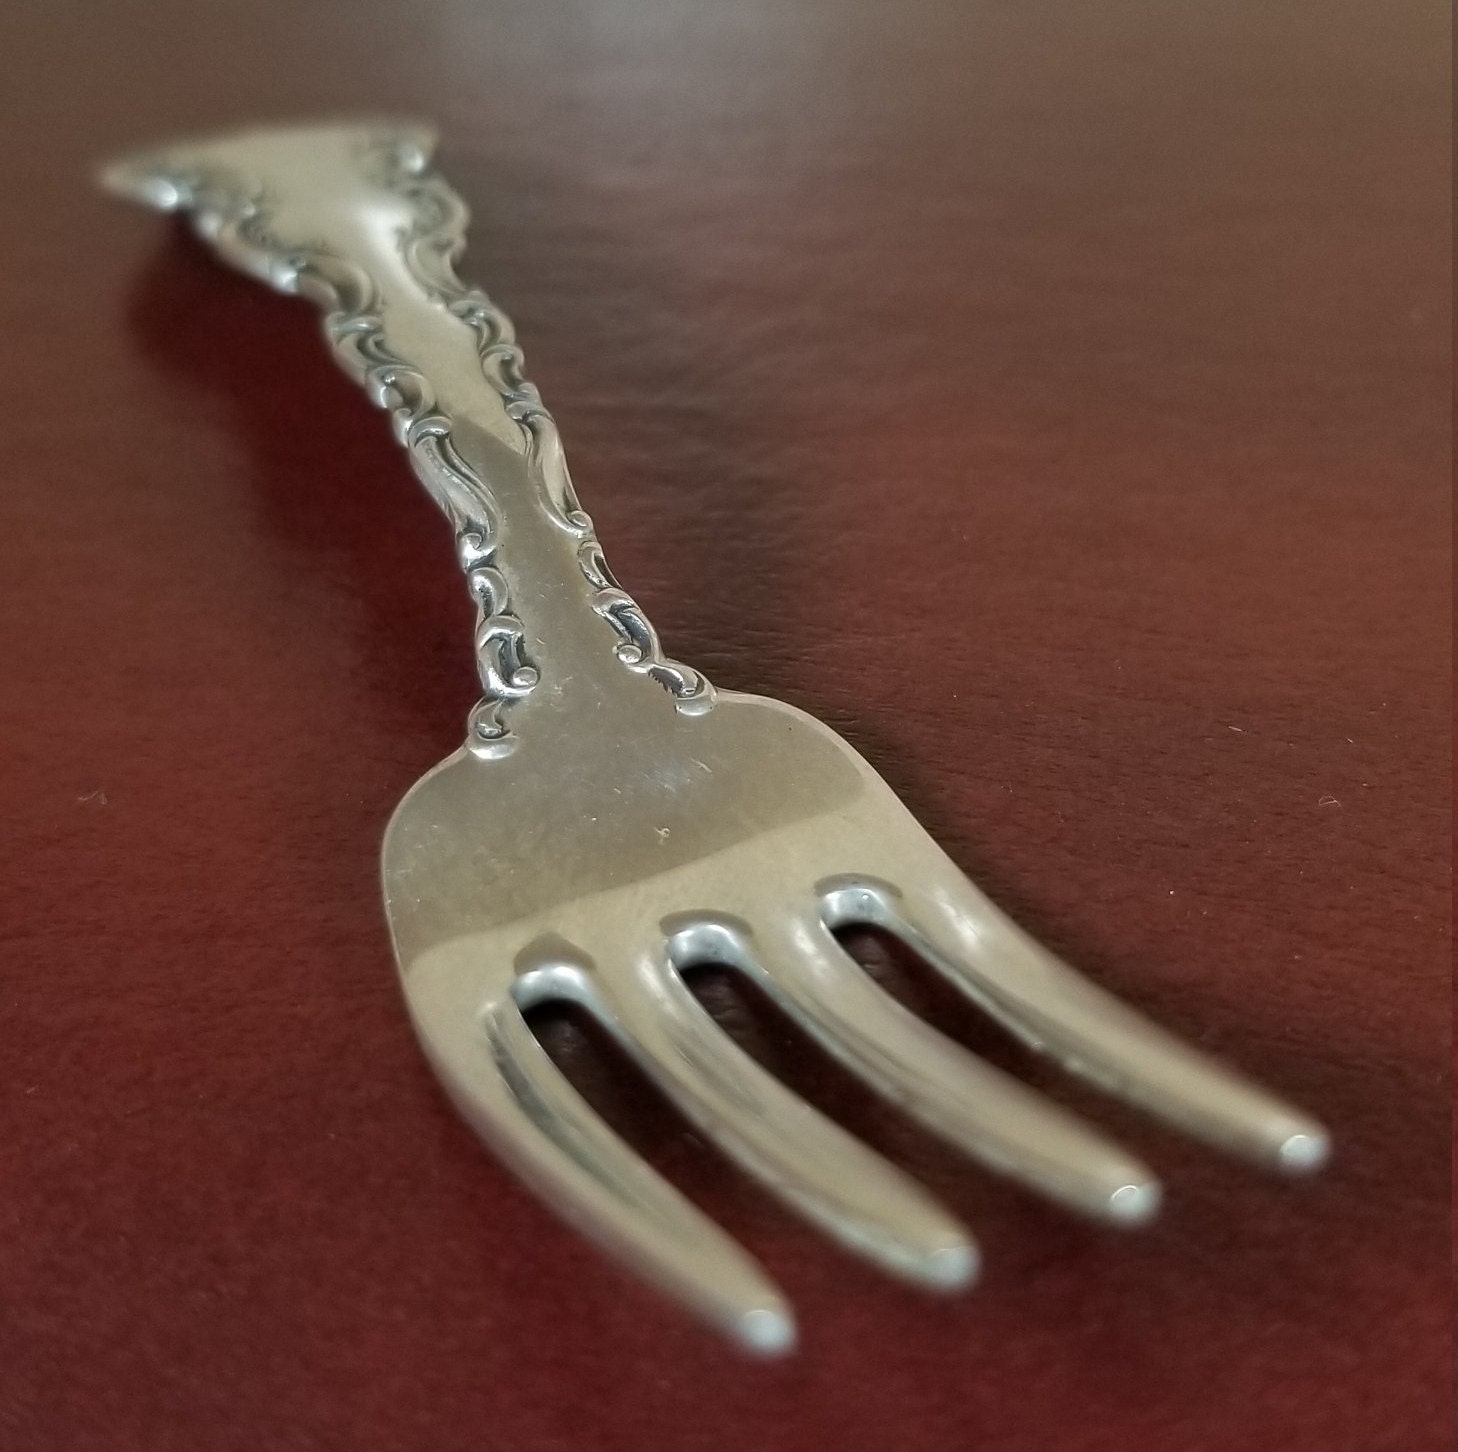 Beaded Sterling Silver Baby Spoon & Fork Set by Krysaliis